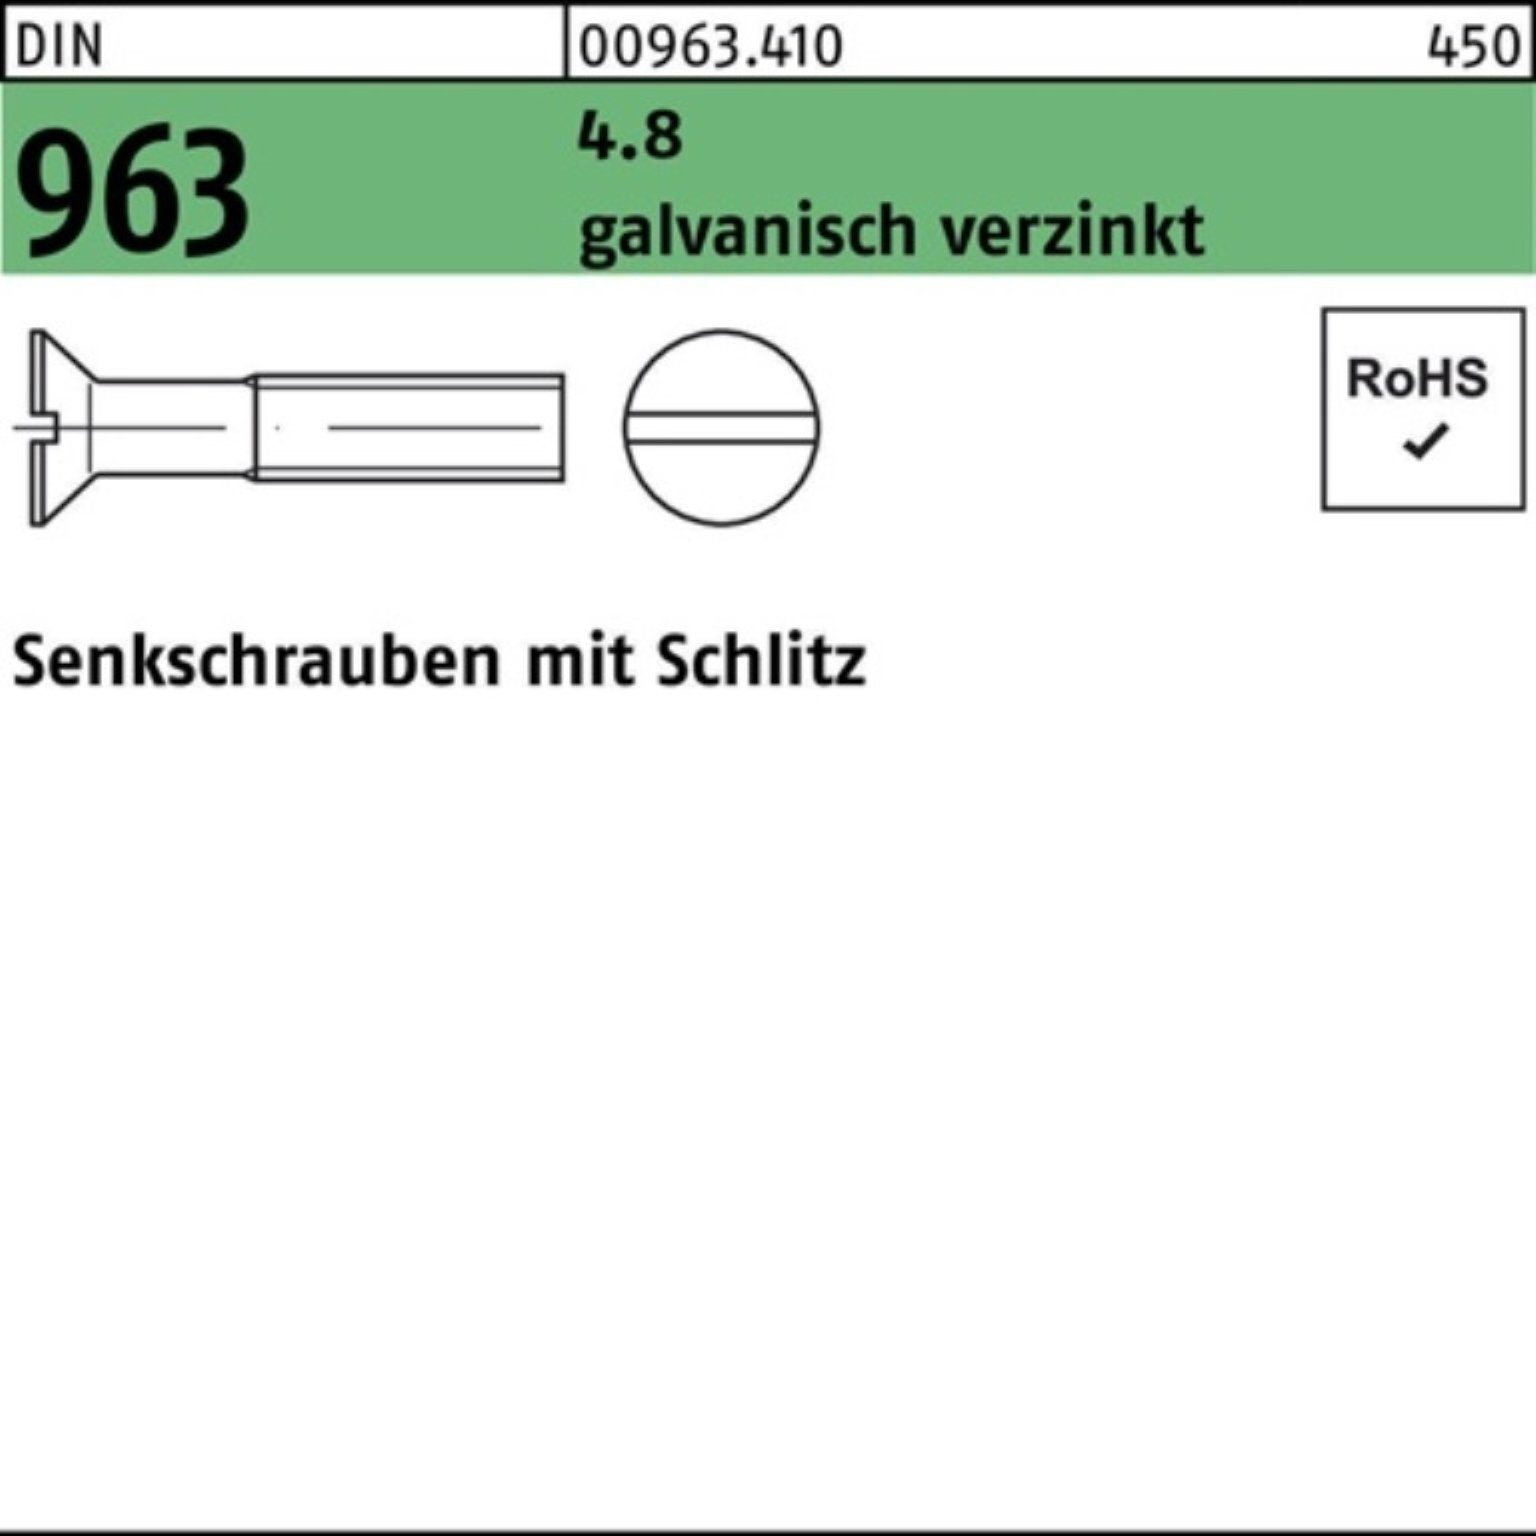 Pack 100er galv.verz. 4.8 Reyher Senkschraube M12x St 963 DIN 100 40 Schlitz Senkschraube